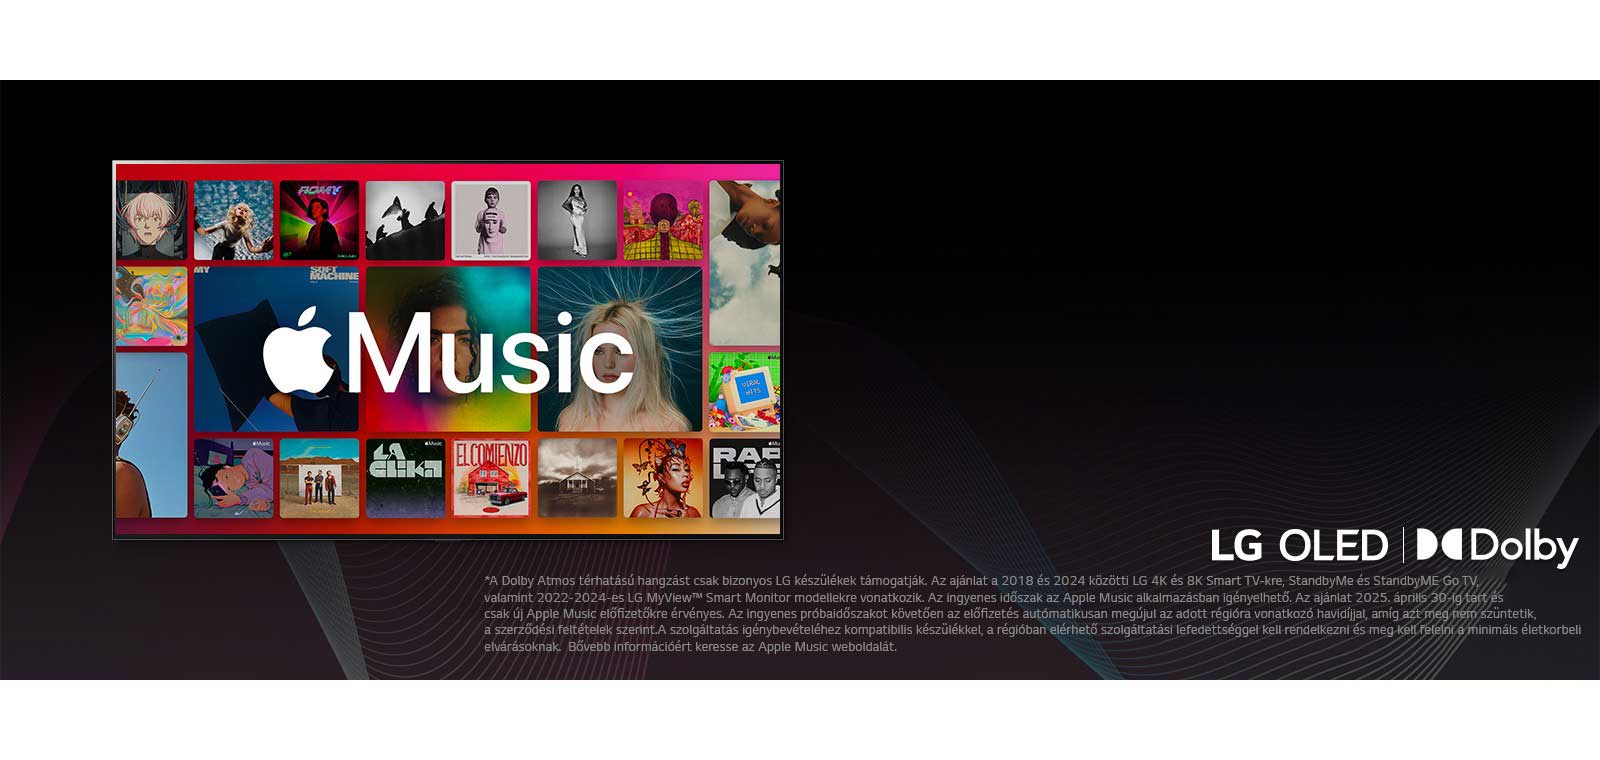 Az albumok táblázatos elrendezése befedve az Apple Music logójával, alatta az LG OLED és a Dolby Atmos logóval.